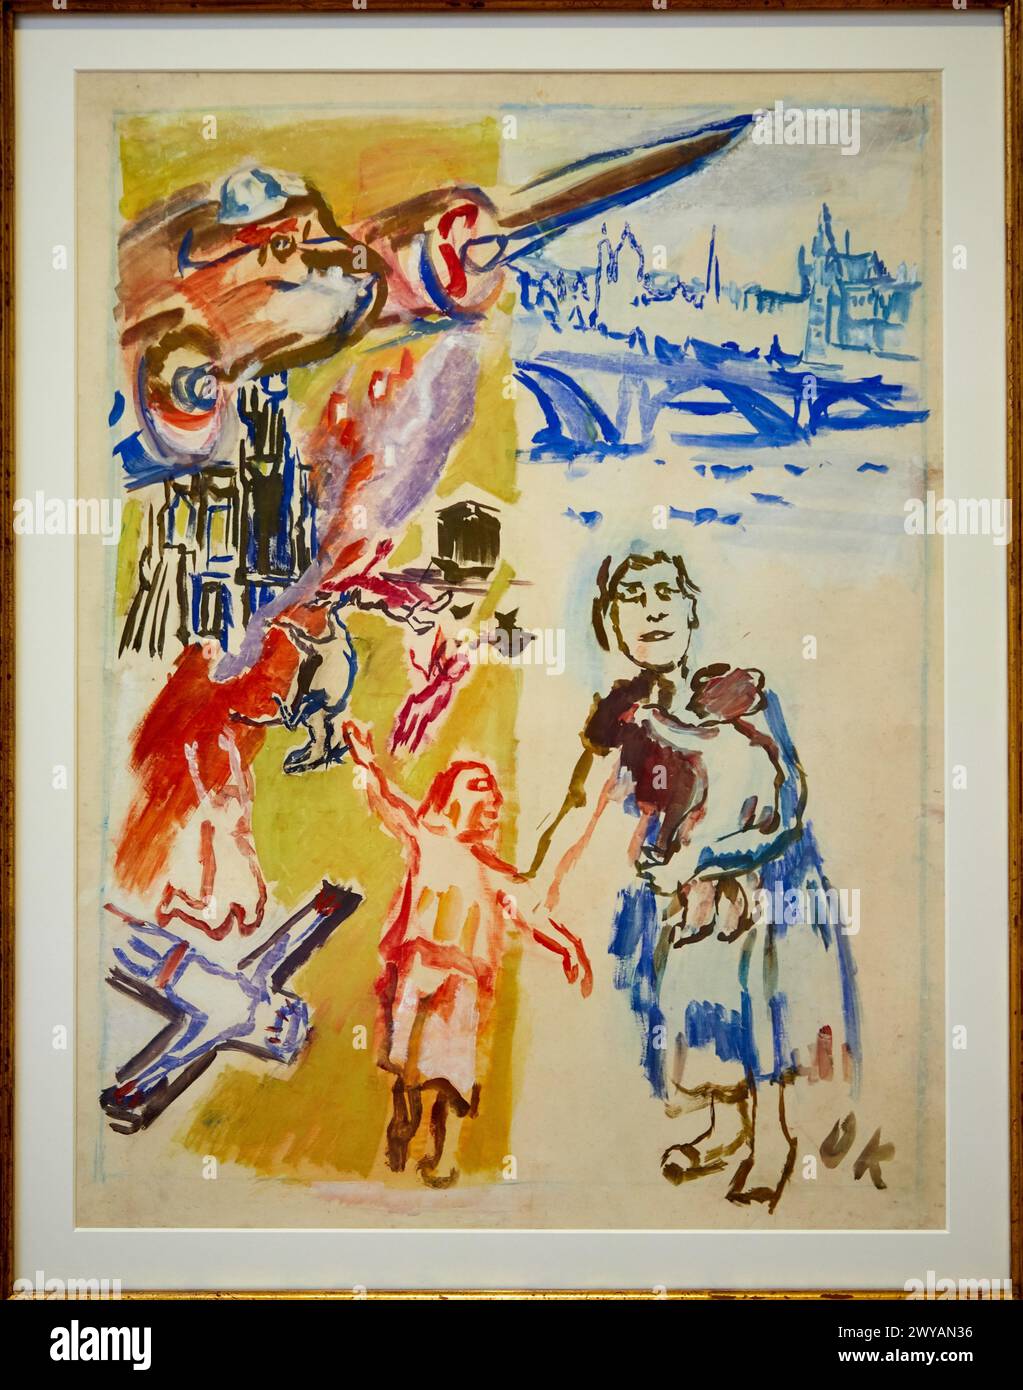 "Pomozte baskicky'm d'etem (Hilfe für baskische Kinder)", Oskar Kokoschka (1886-1980), Museo de Bellas Artes, Bilbao, Bizkaia, Baskenland, Spanien. Stockfoto